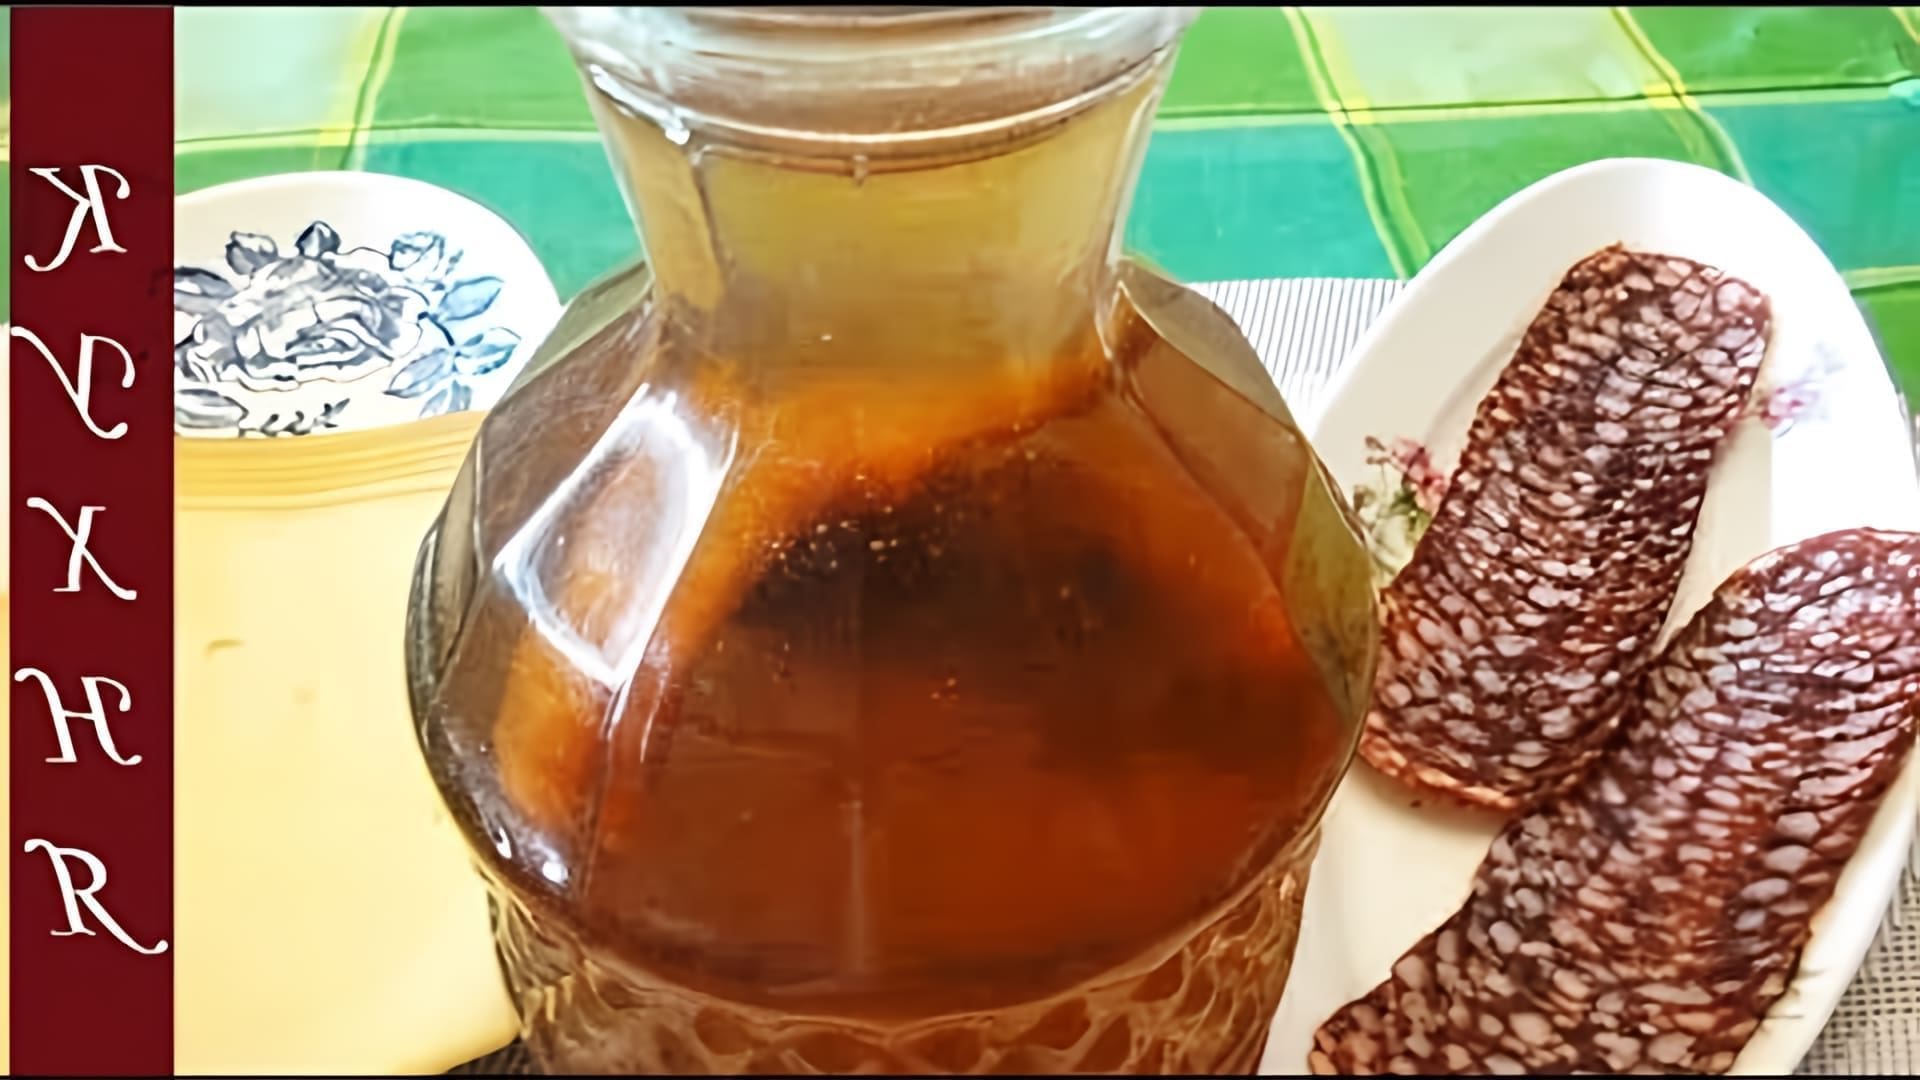 В этом видео демонстрируется рецепт приготовления перцовки, традиционного русского спиртного напитка